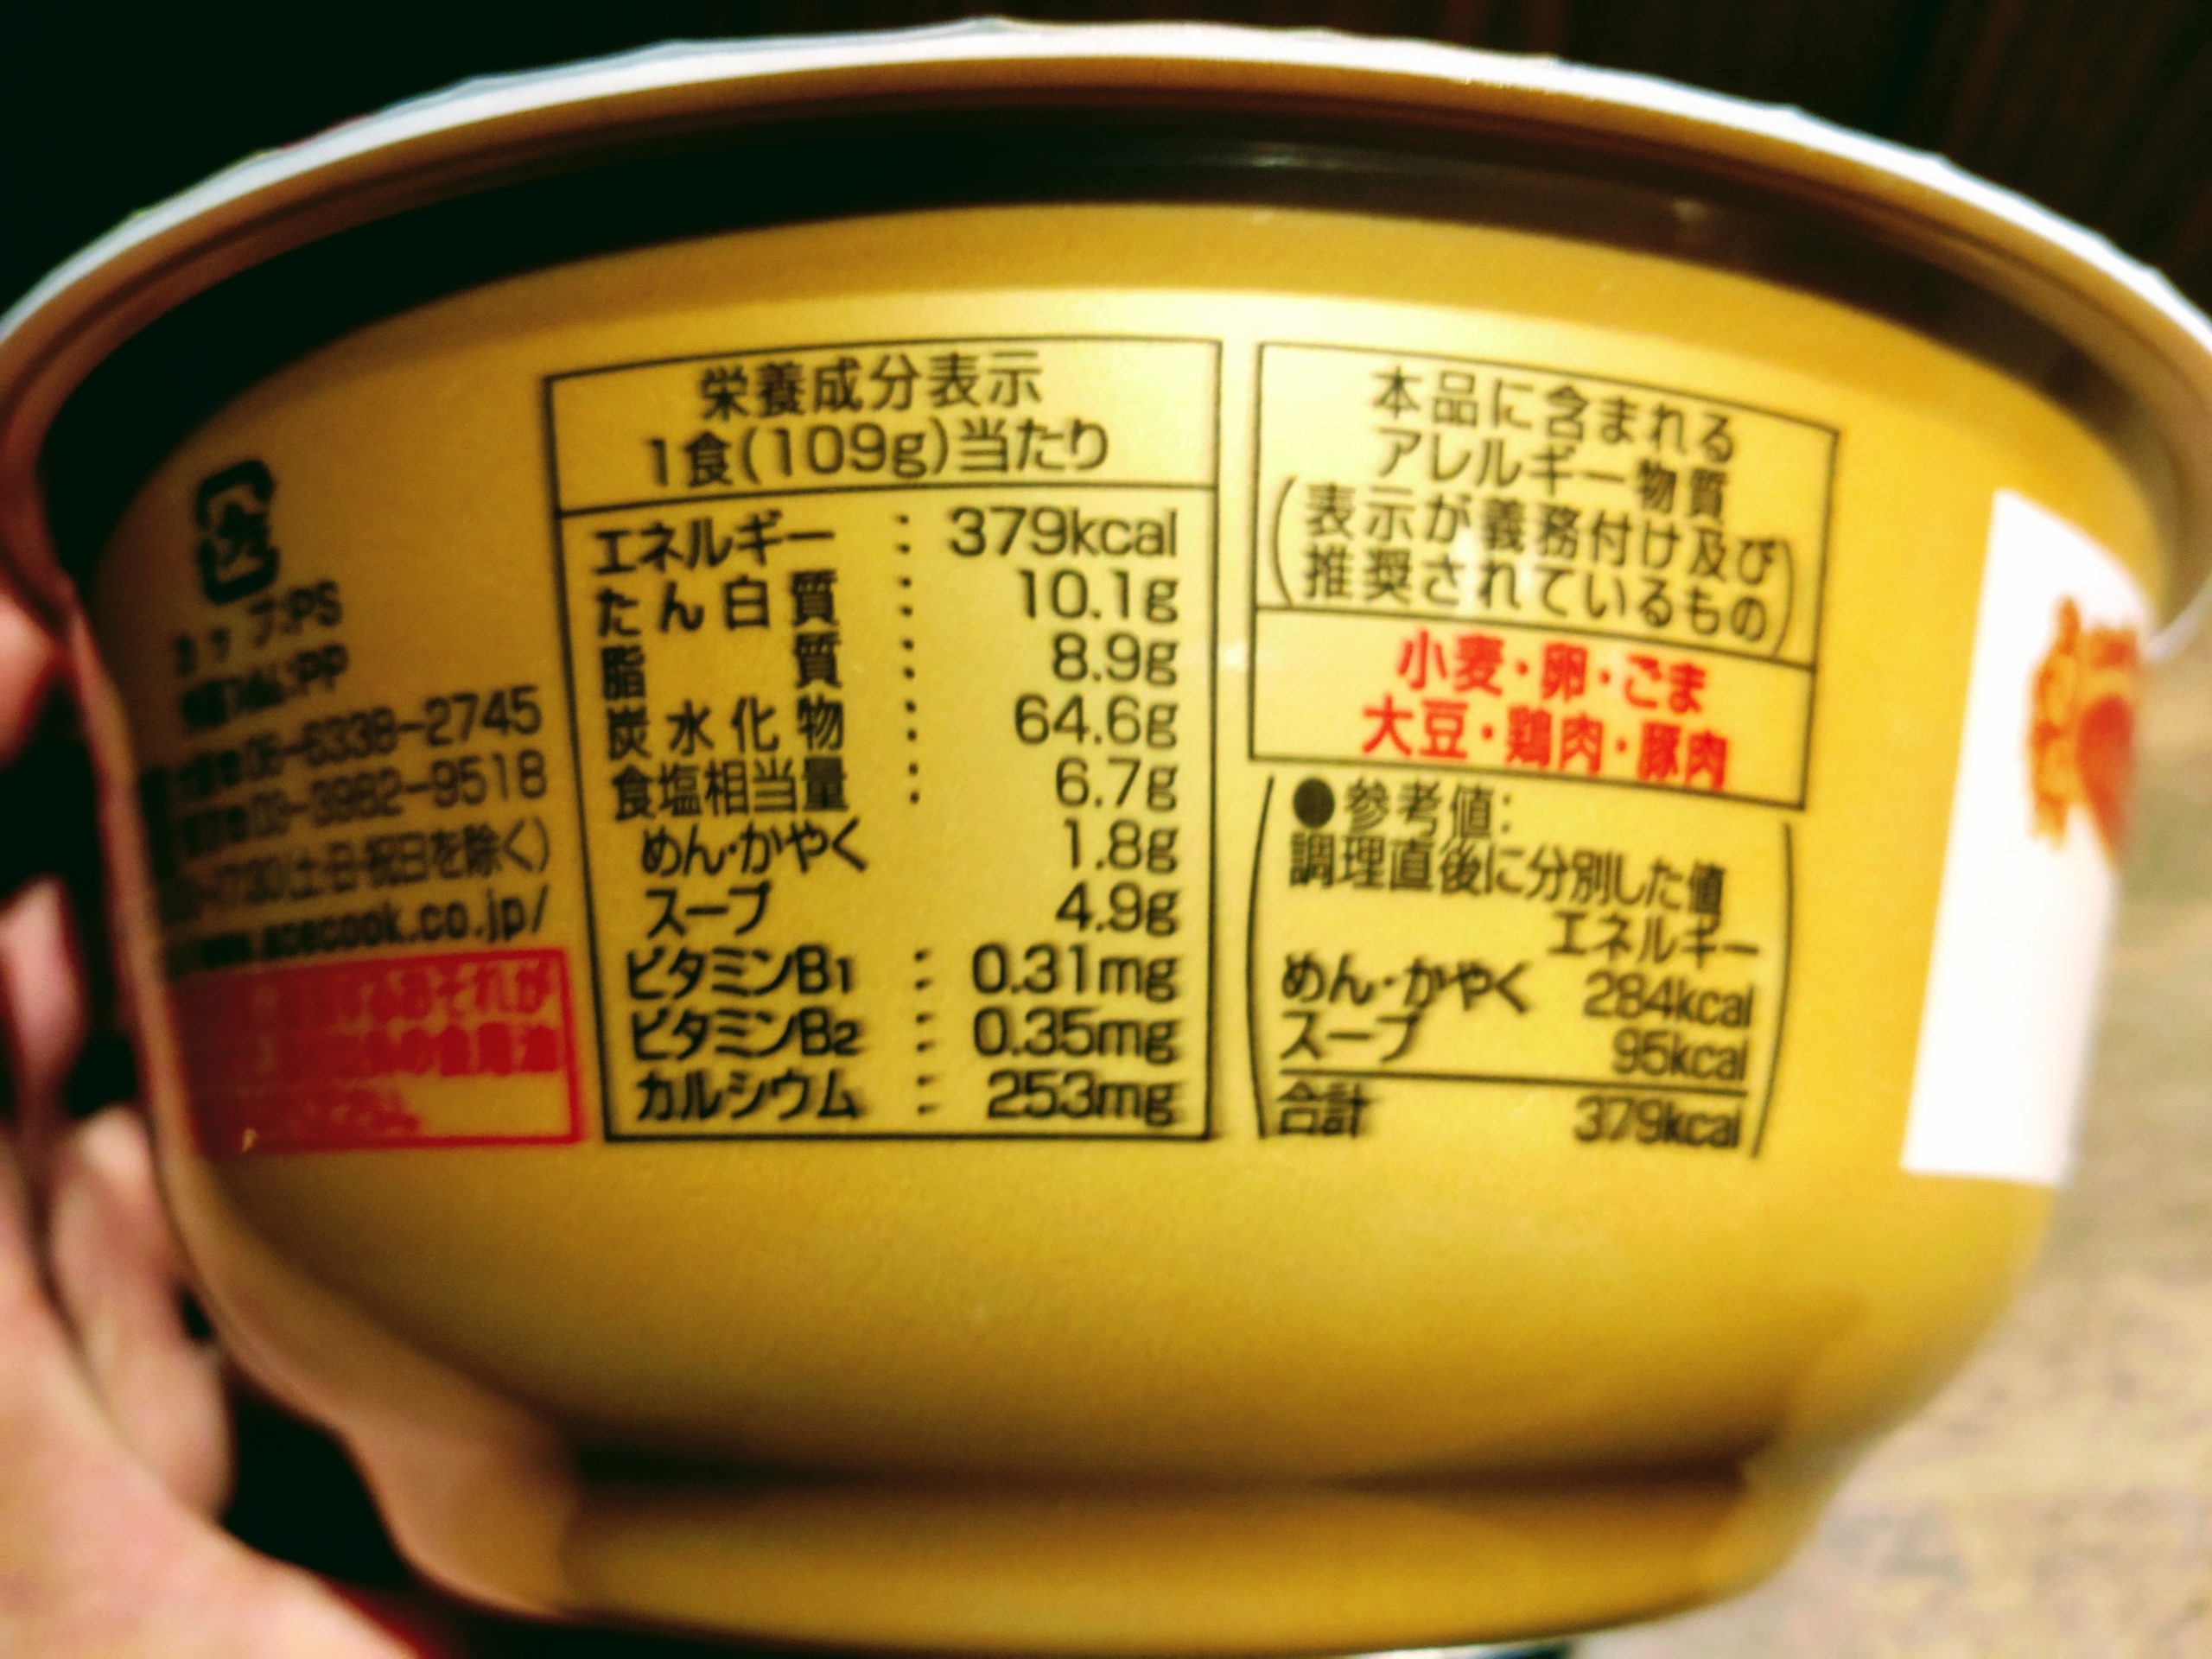 ワンタン麺の最高峰の店 八雲の一杯 ワンタン麺 白醤油味の栄養成分表示